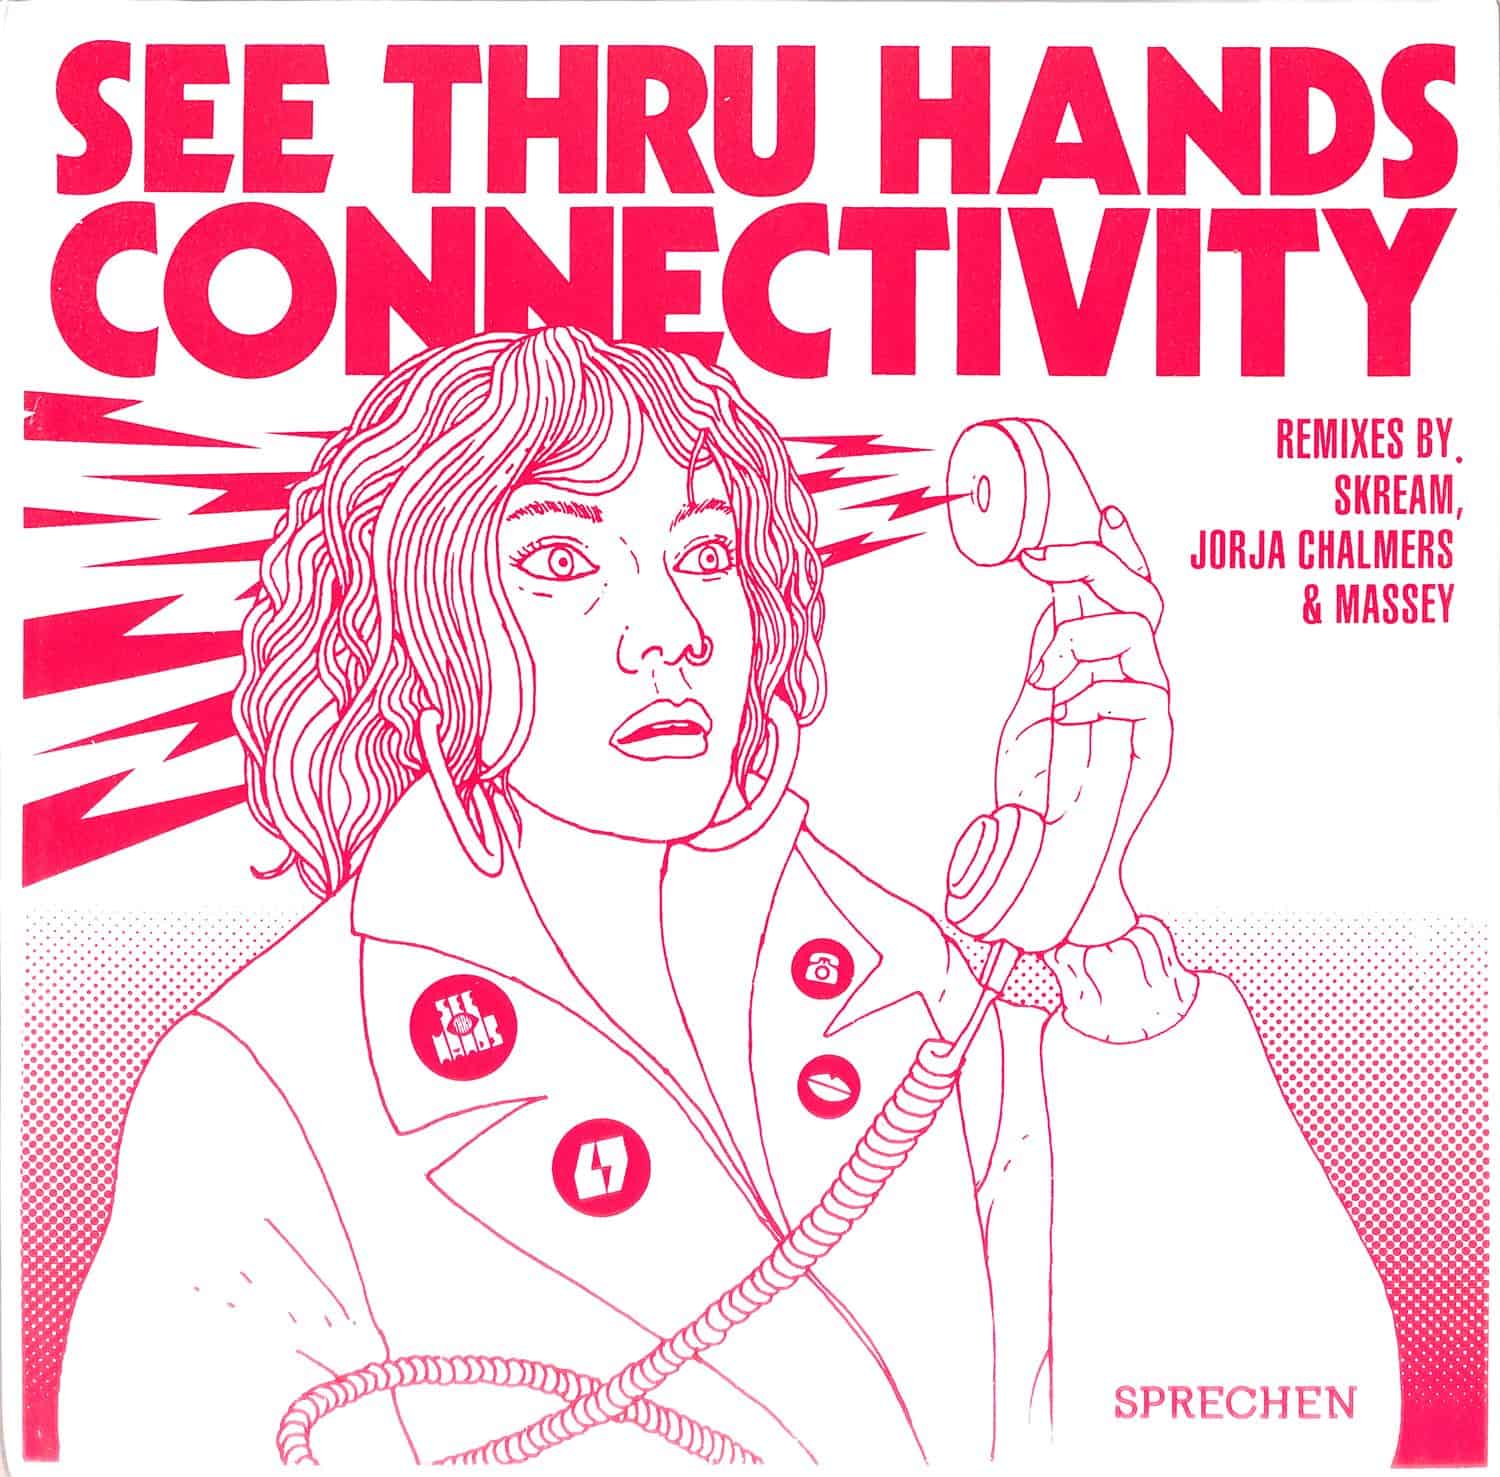 See Thru Hands - CONNECTIVITY